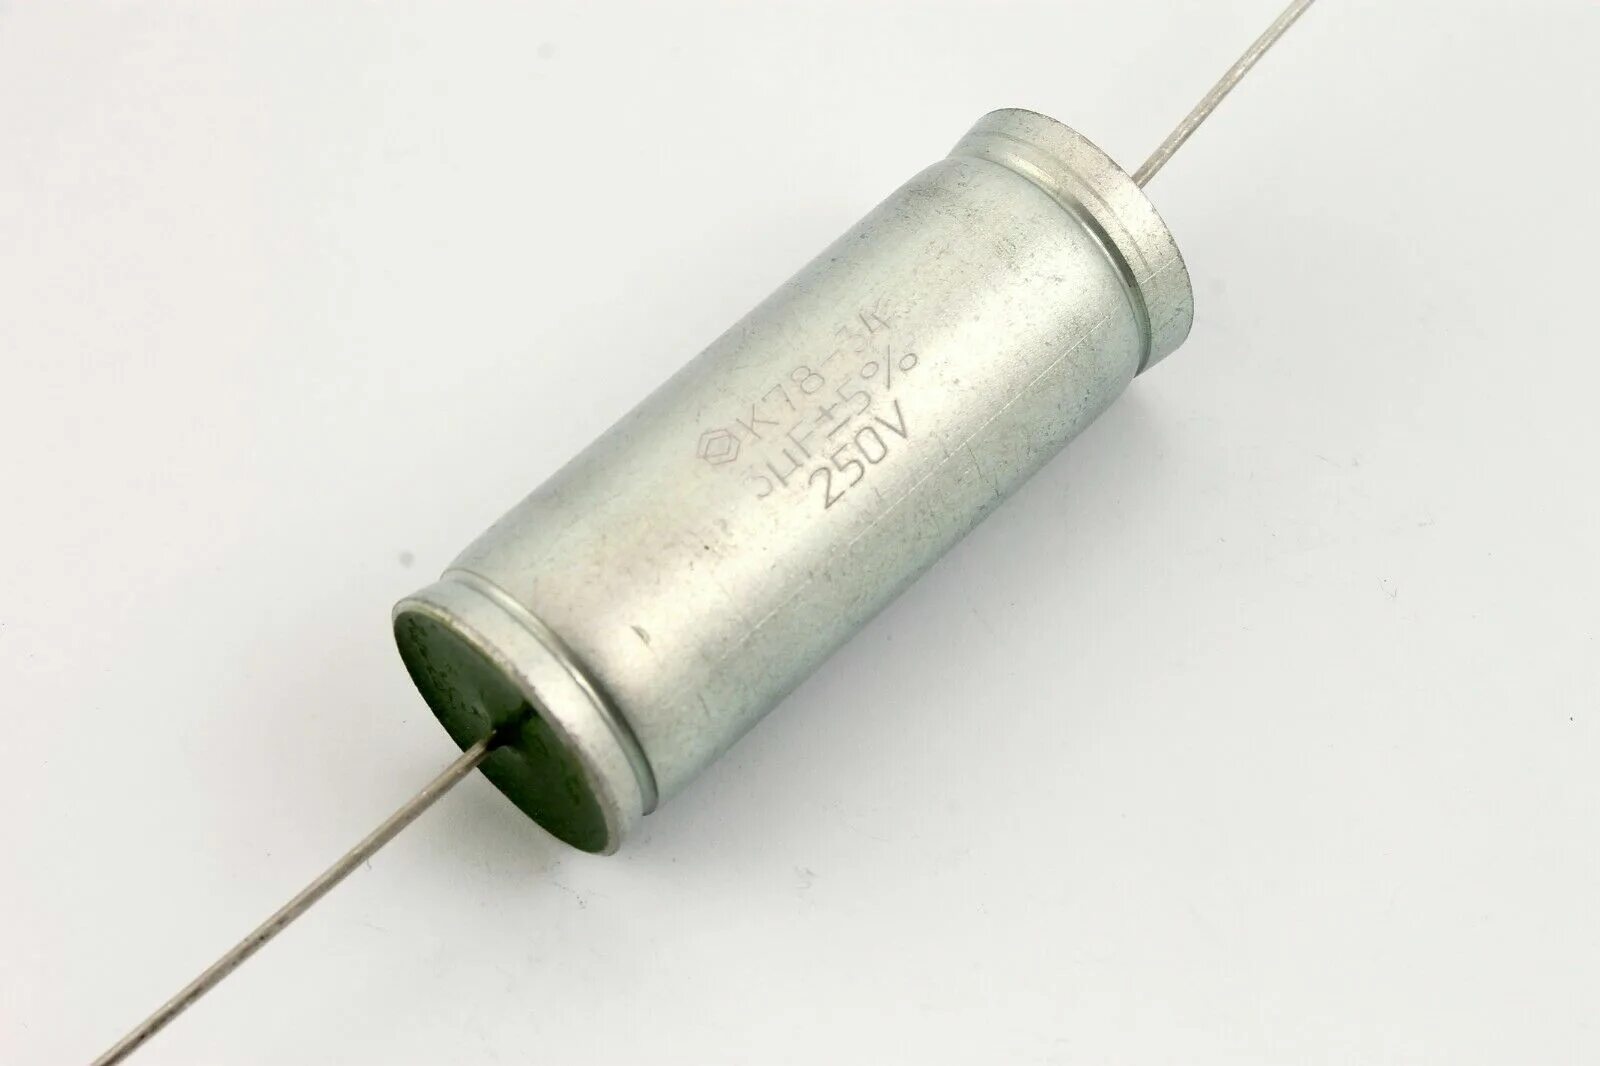 Конденсатор 2.2 МКФ 400 В. К78-34 конденсаторы. Конденсаторы к78-34б. 1.2 МКФ 400в.